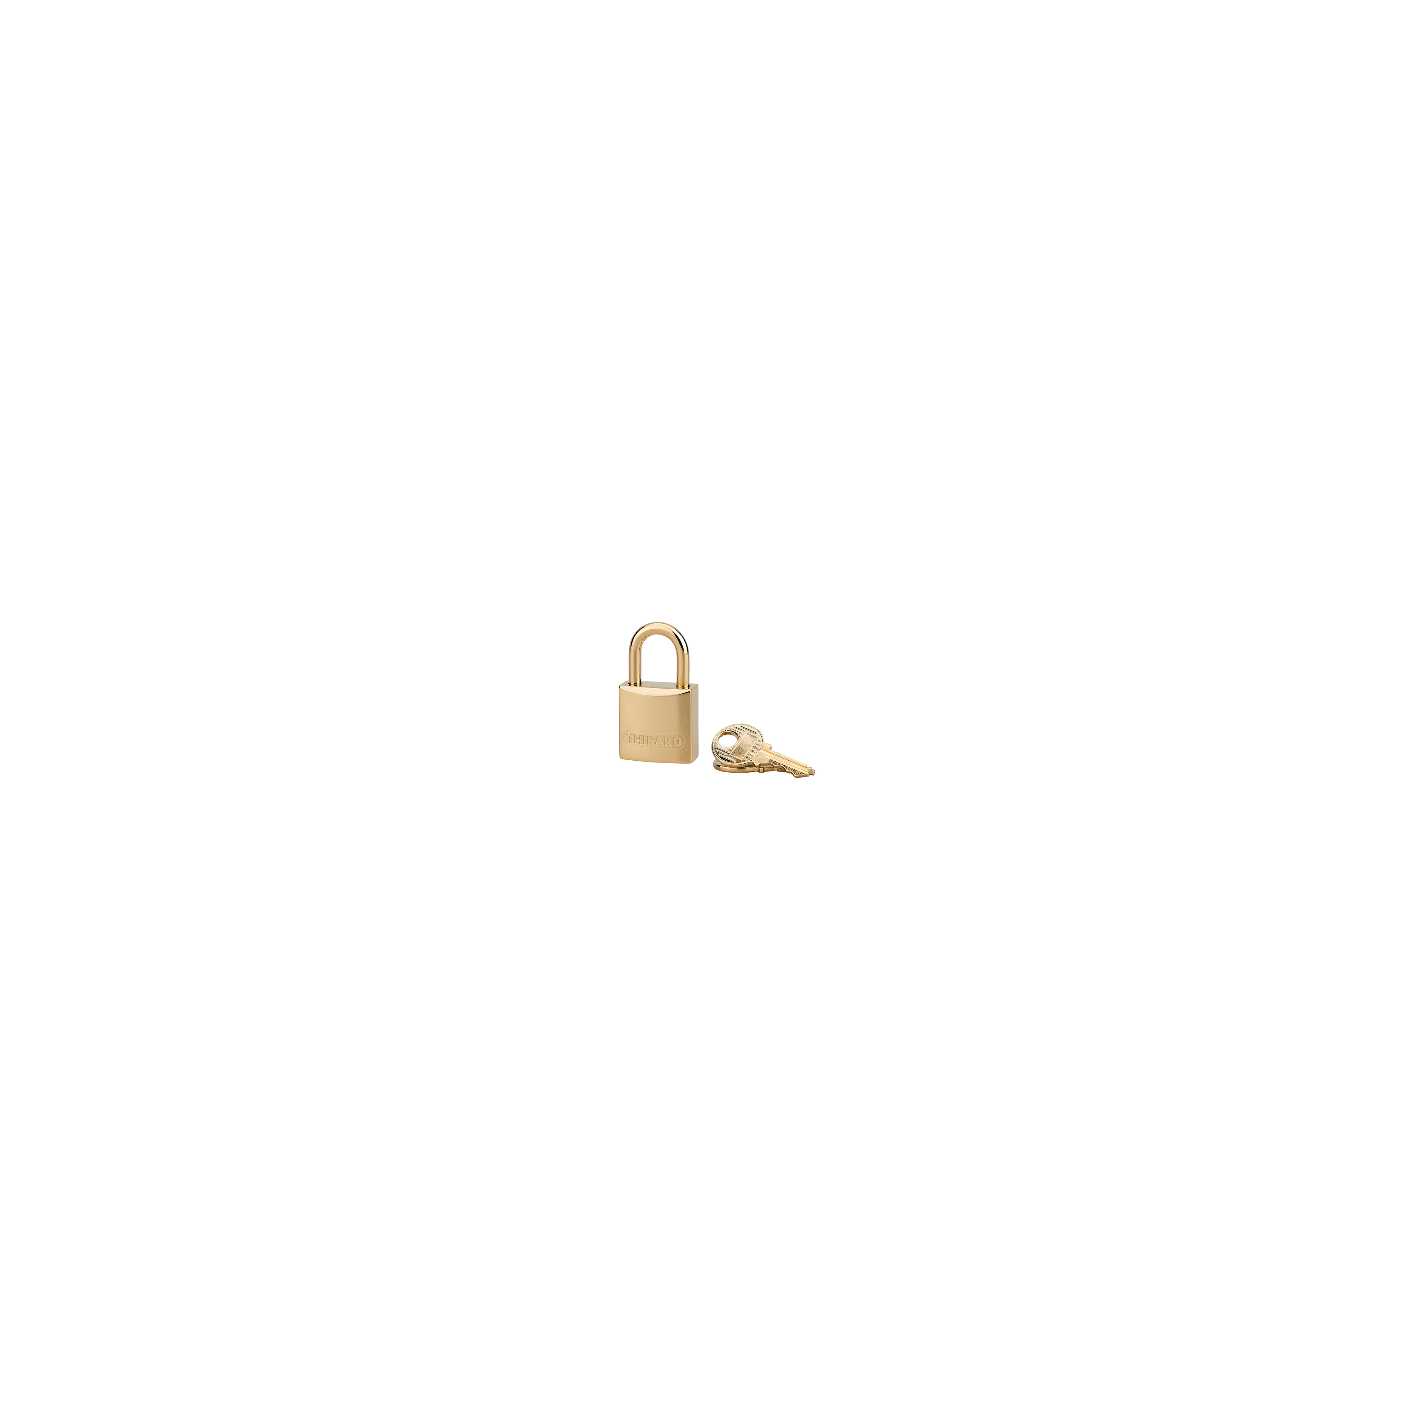 THIRARD - Cadenas à clé Luxe, laiton, intérieur, anse laiton, 20mm, or, 2 clés 3